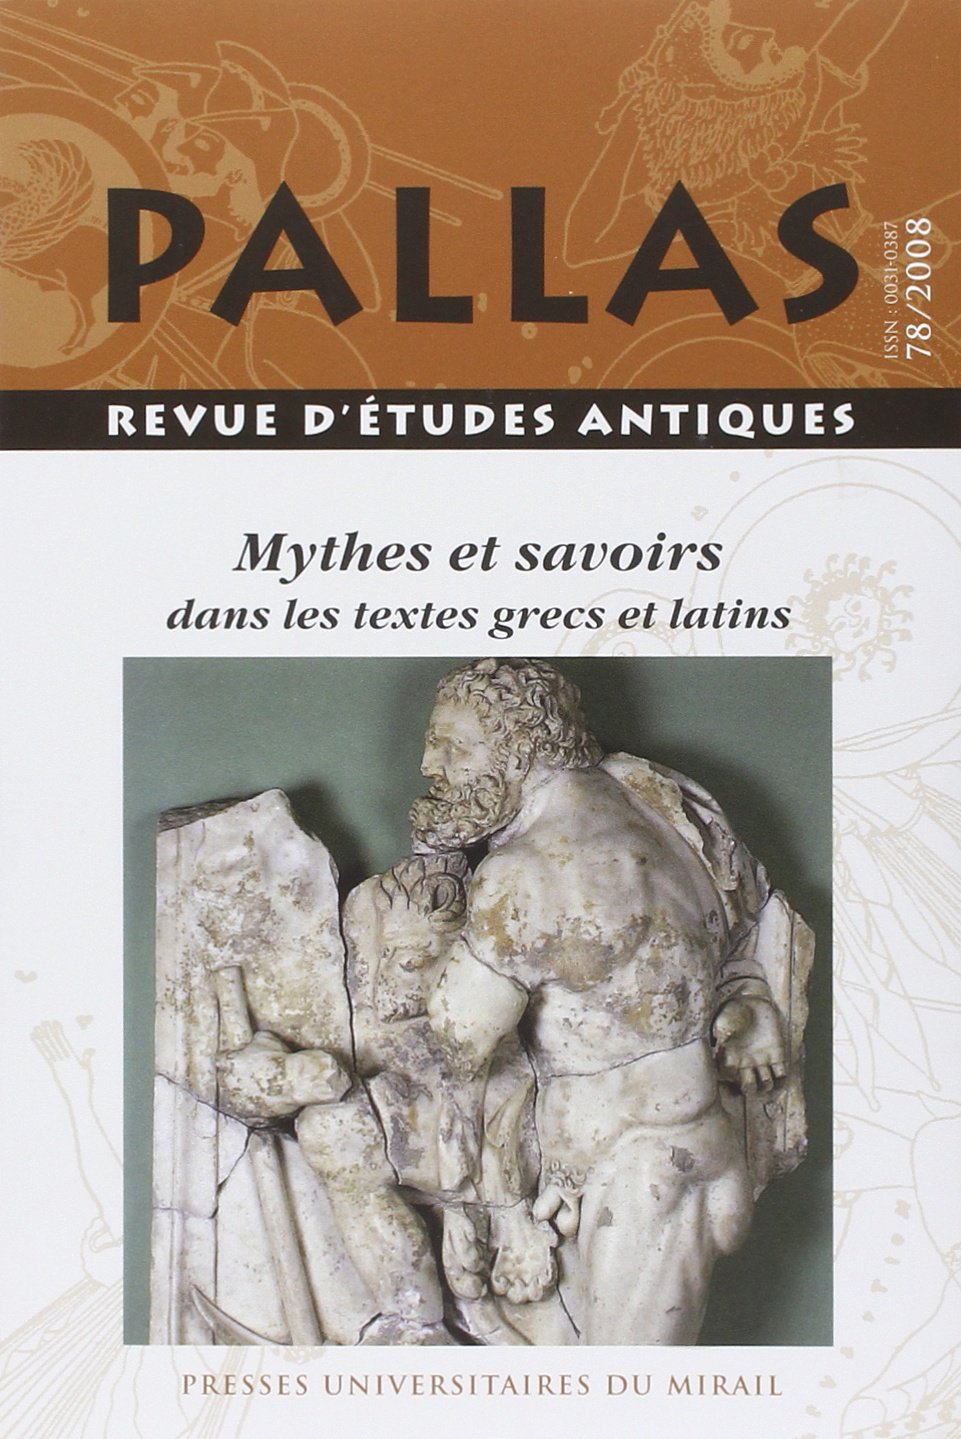 78. Mythes et savoirs dans les textes grecs et latins, 2009, 270 p.